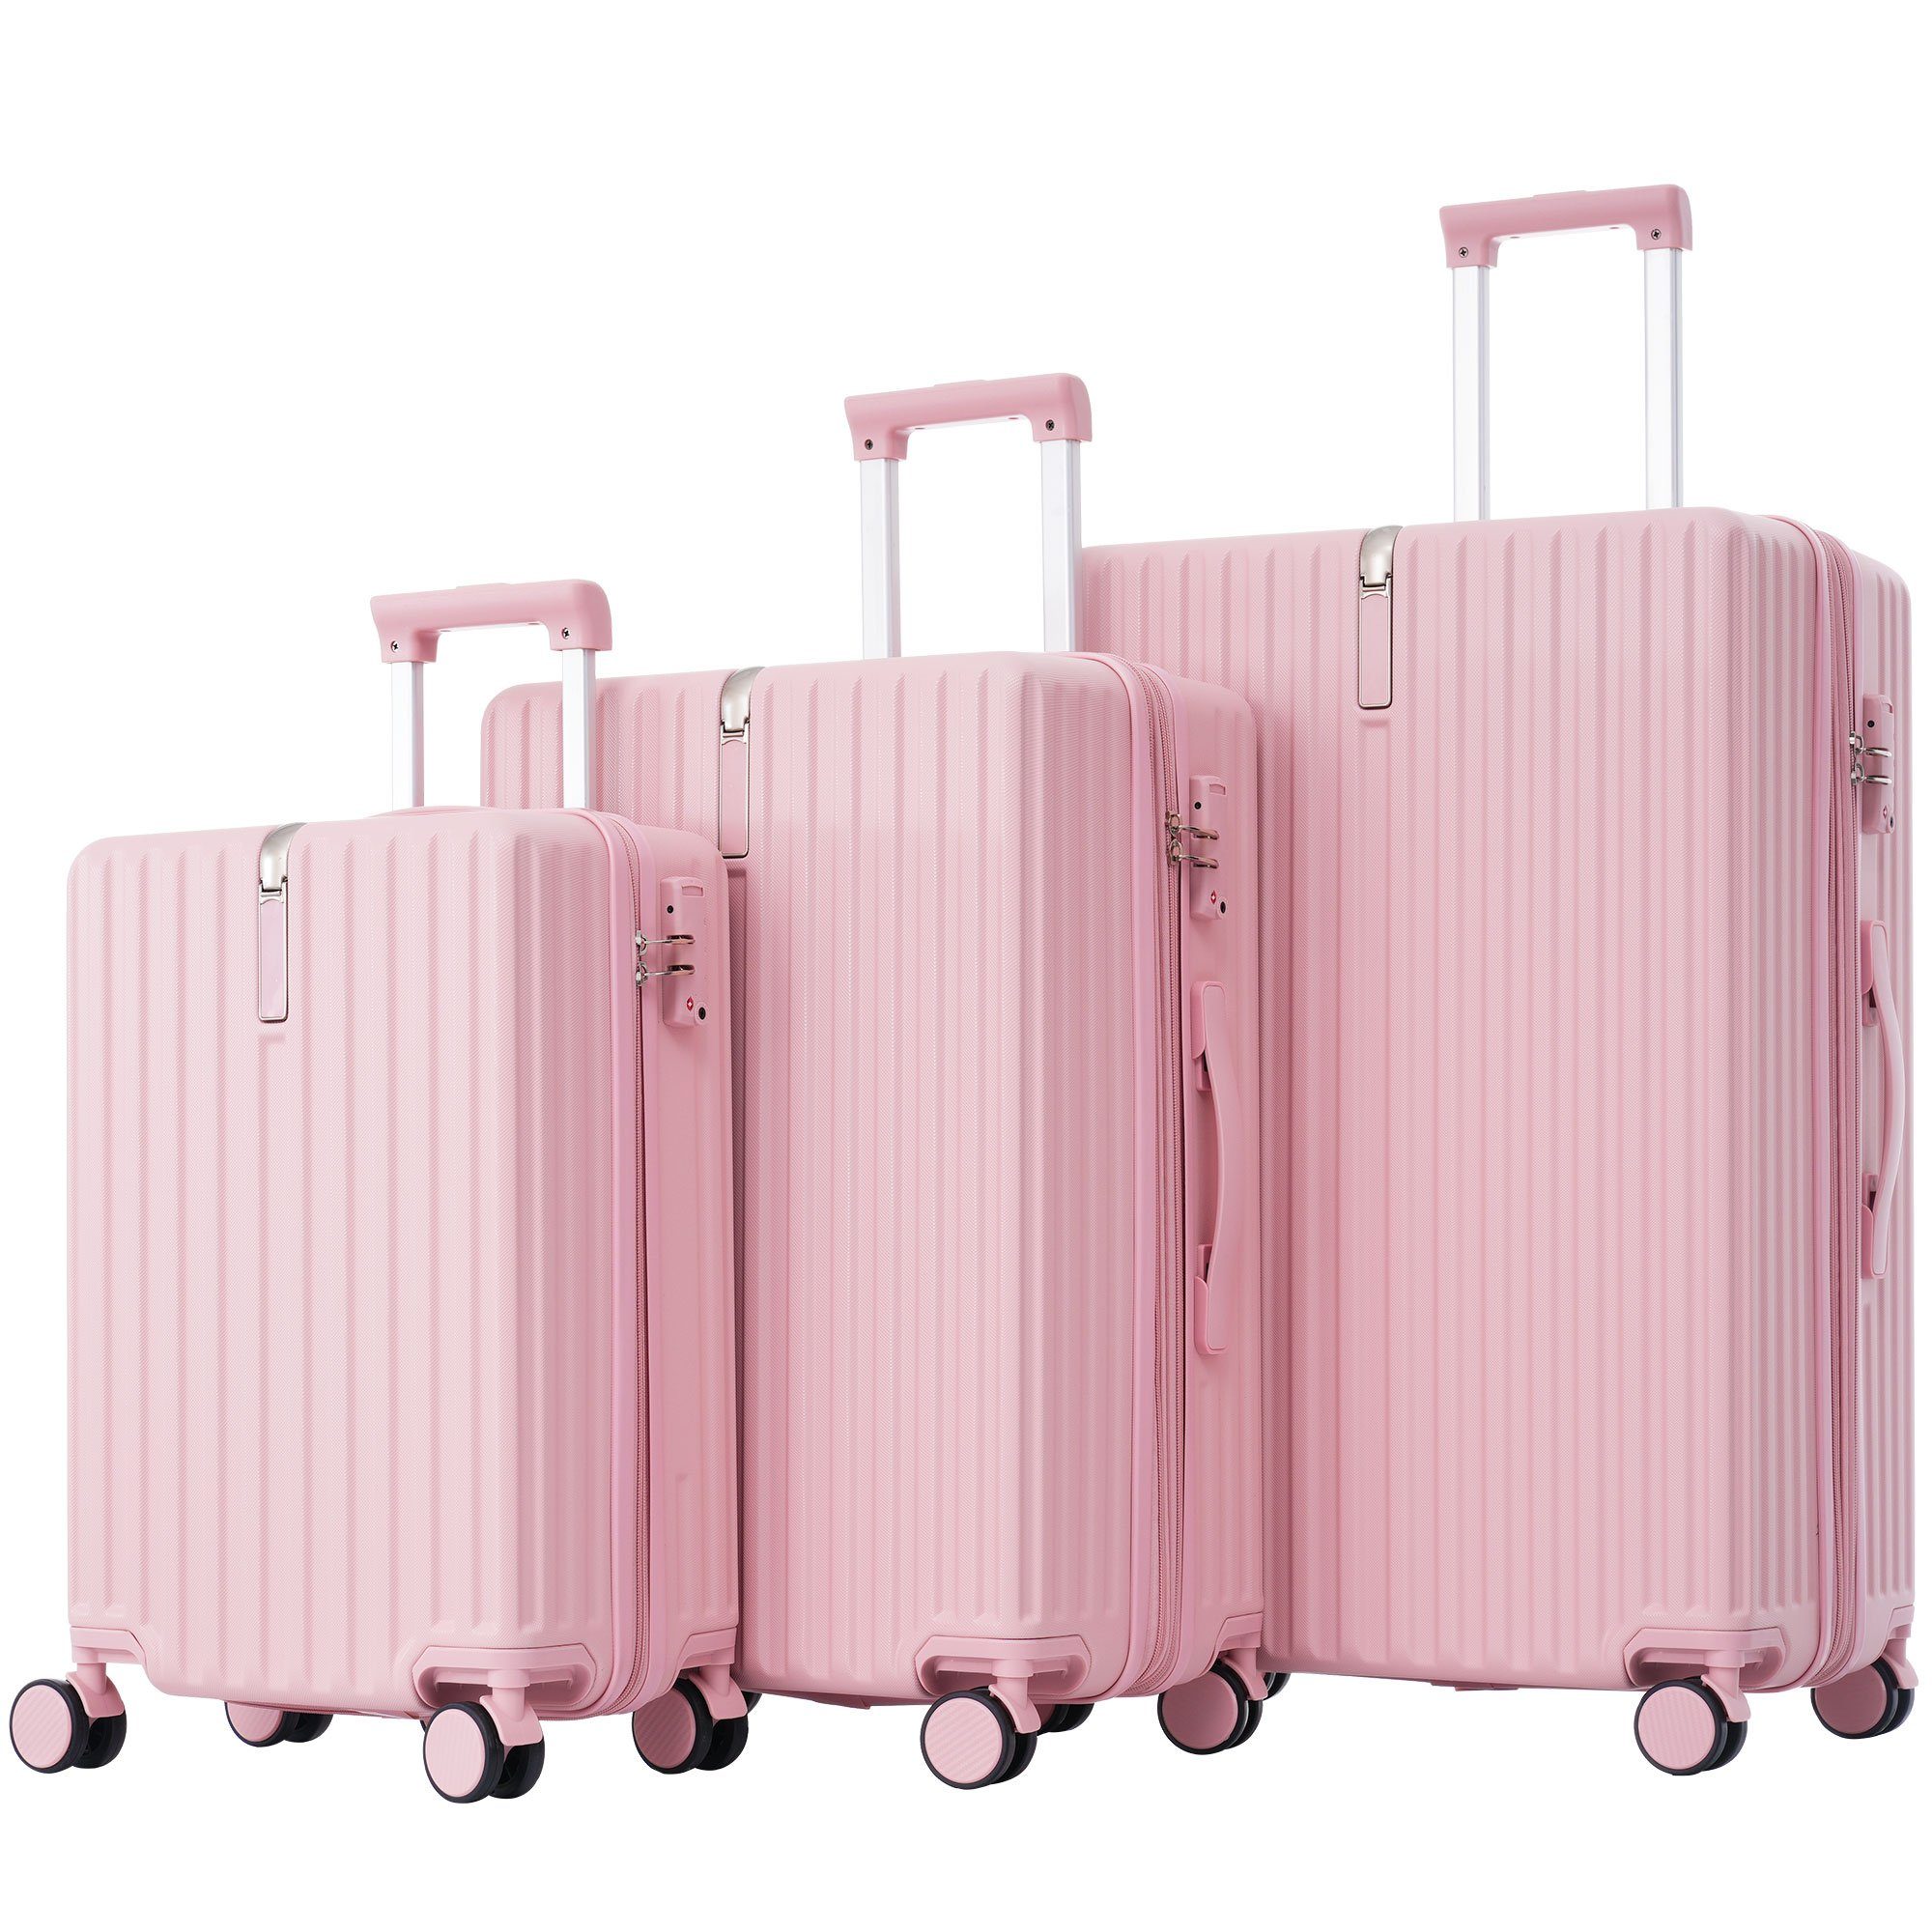 Ulife Trolleyset Kofferset Handgepäck Reisekoffer ABS-Material, TSA Zollschloss, 4 Rollen, (3 tlg) Rosa